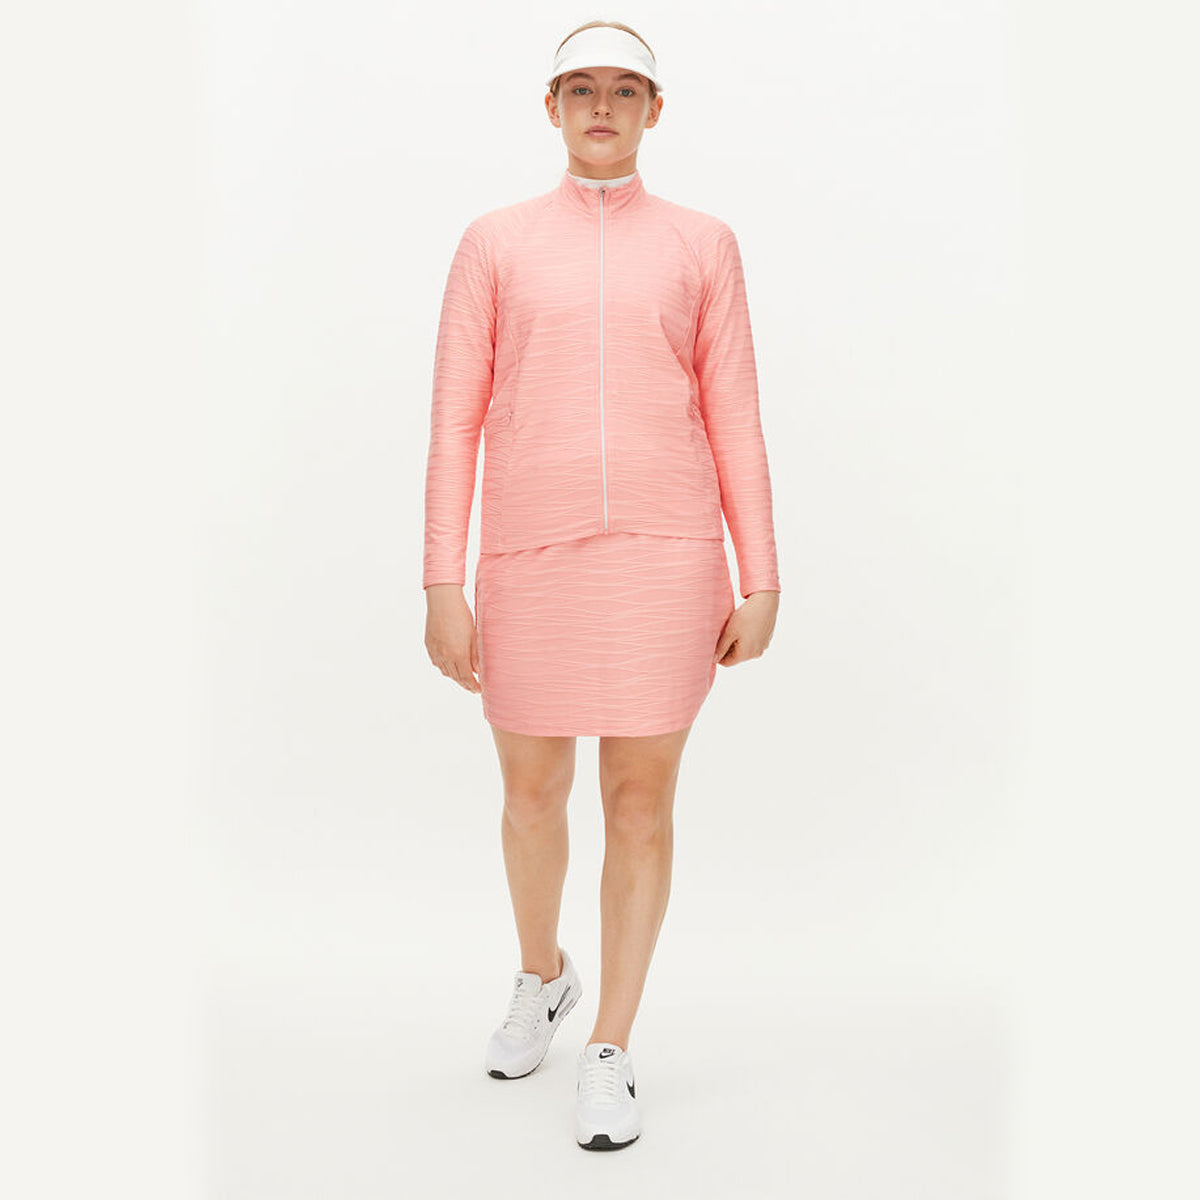 Rohnisch Women's Jodie Golf Jacket - Rose